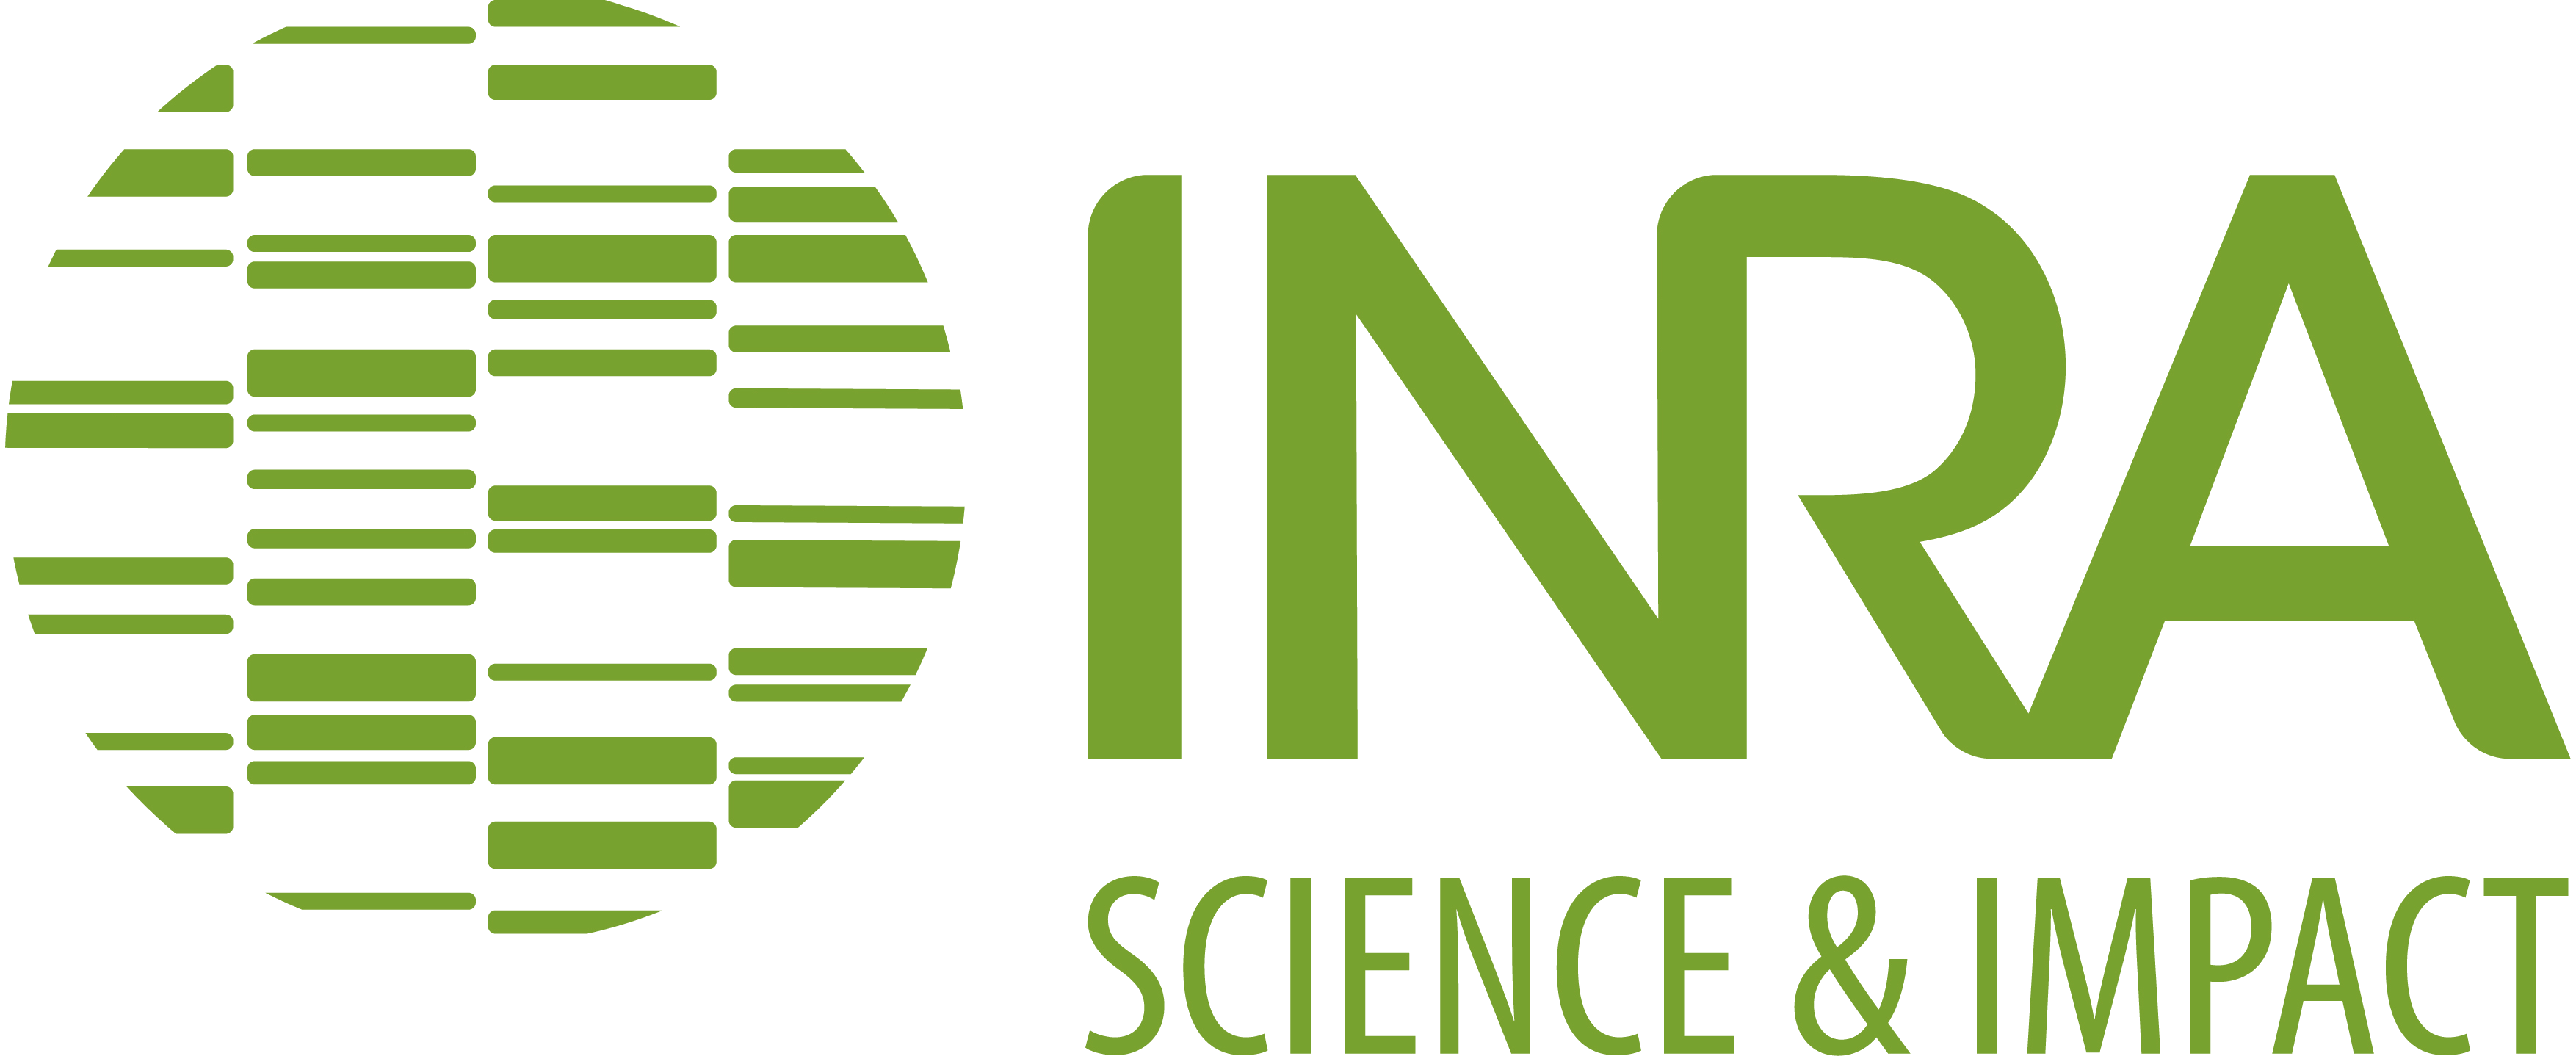 Logo officiel INRA